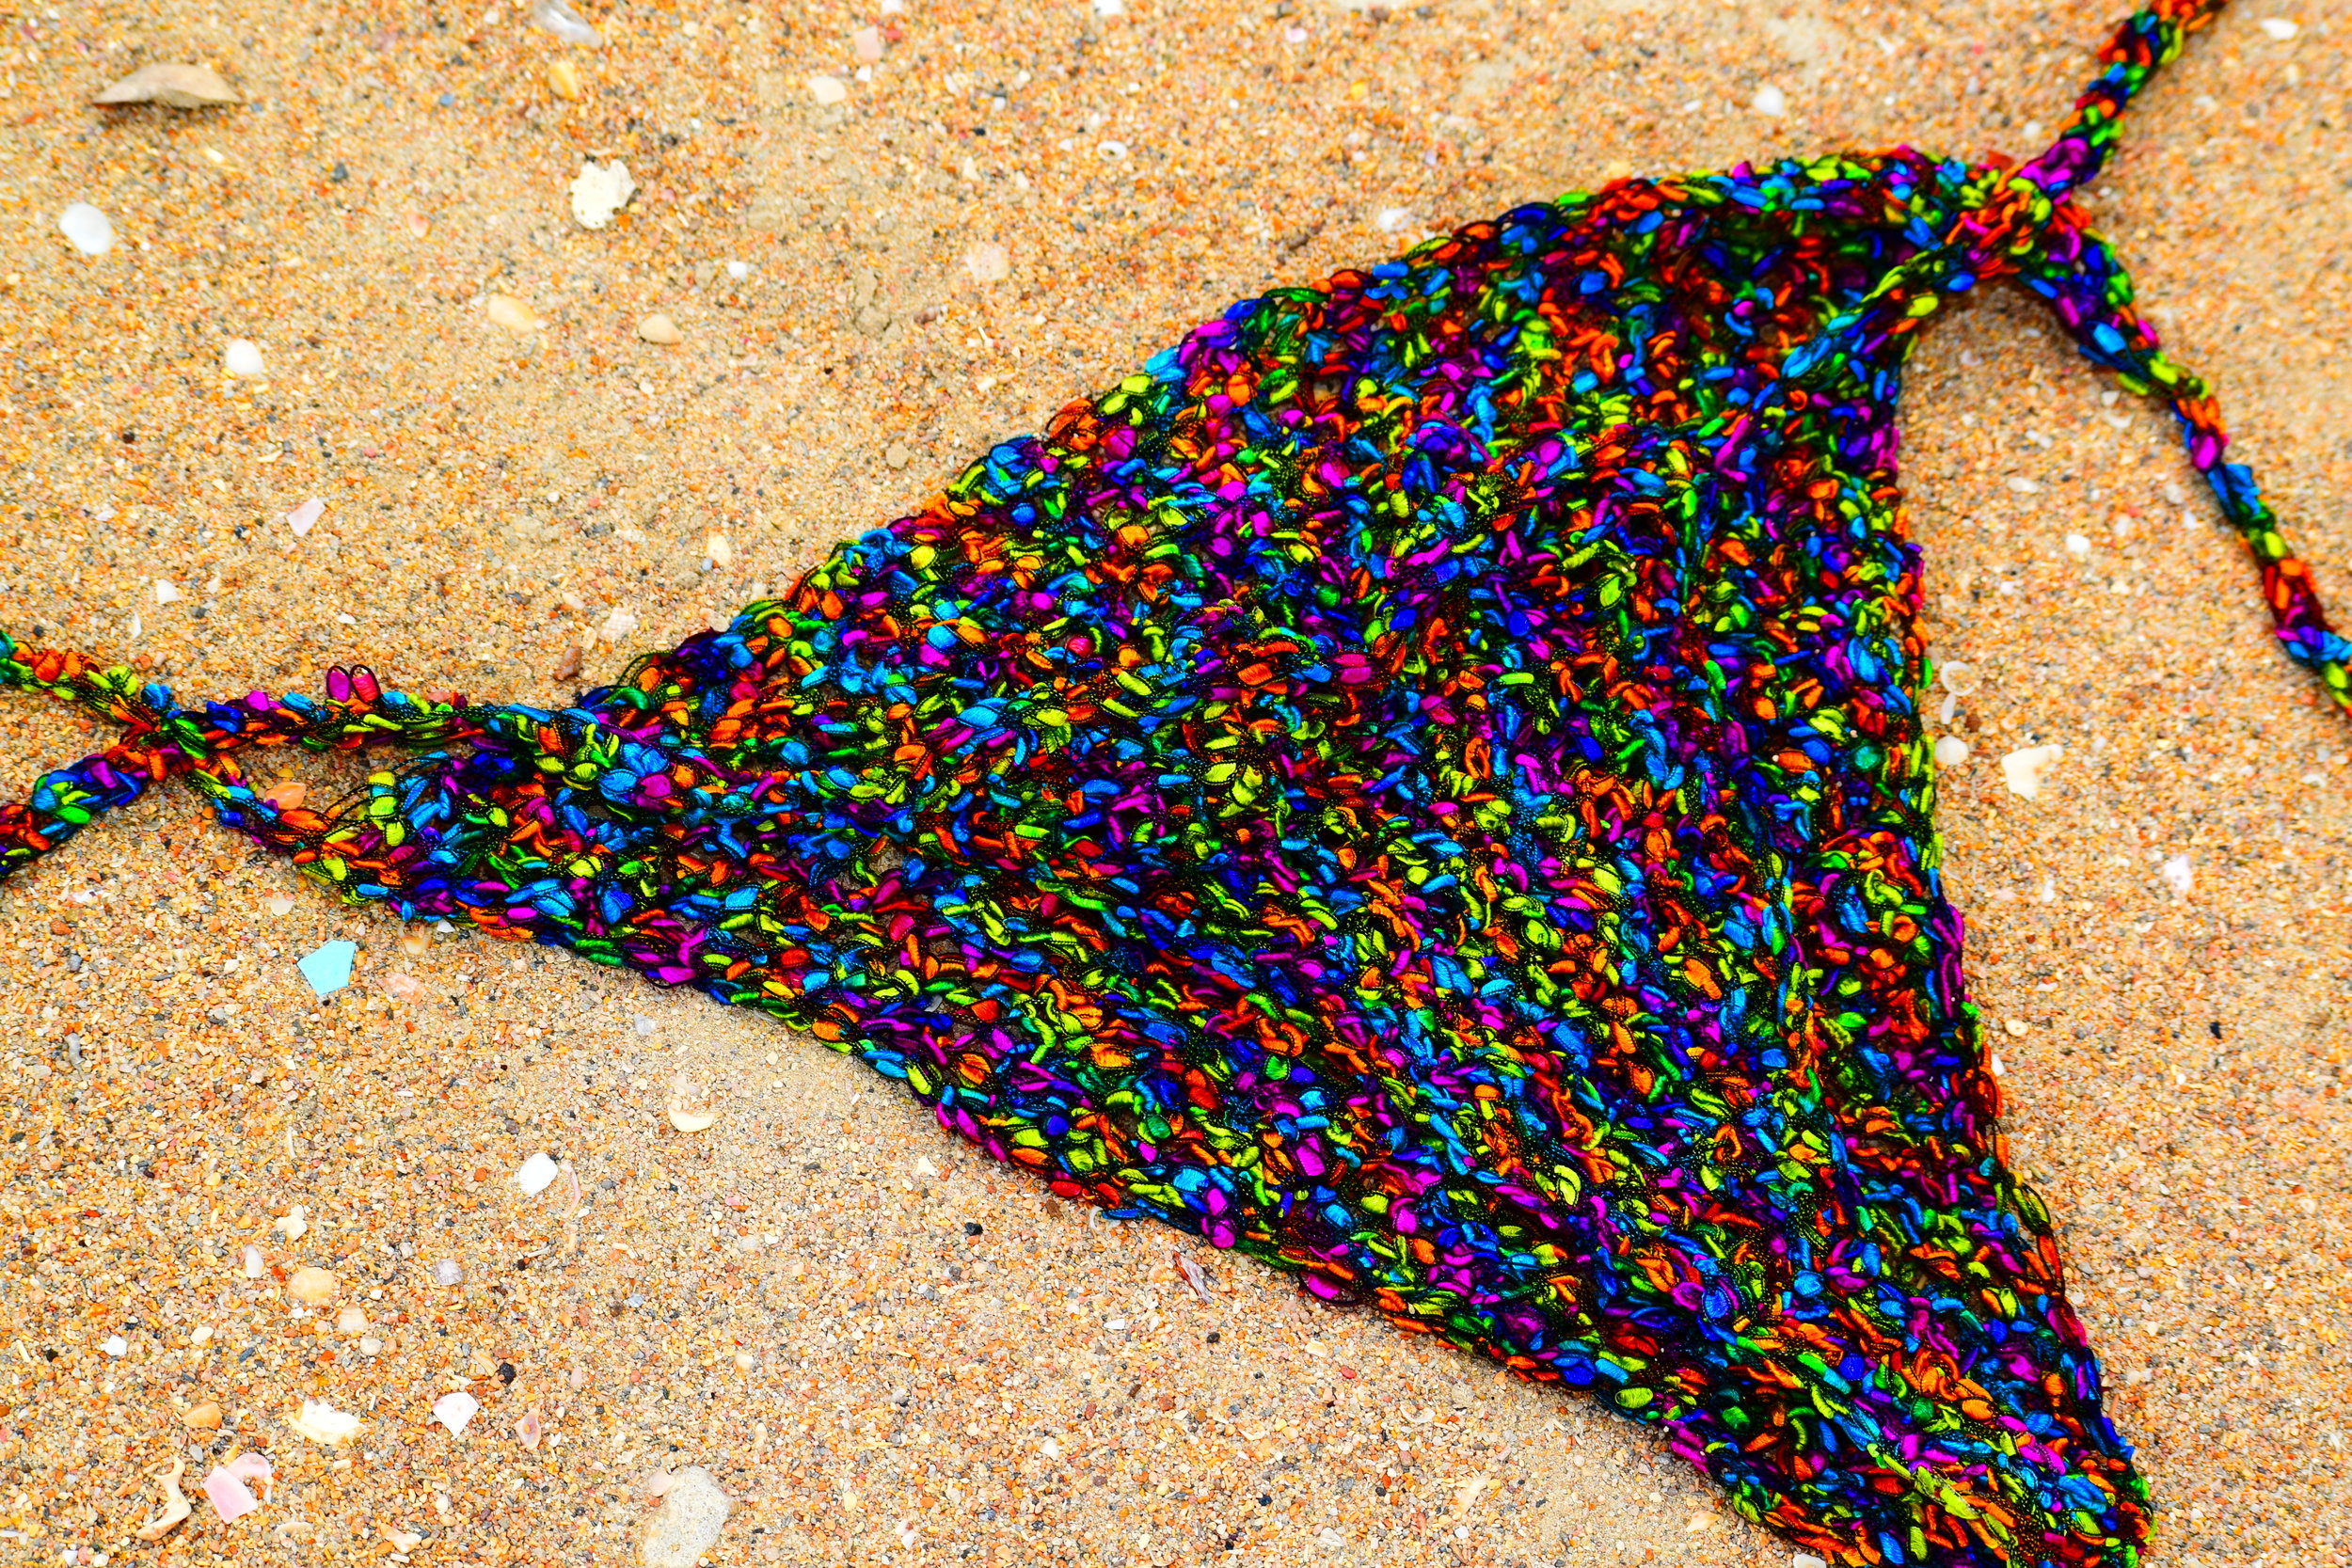 MSW-tricoloredbottom-sand.JPG